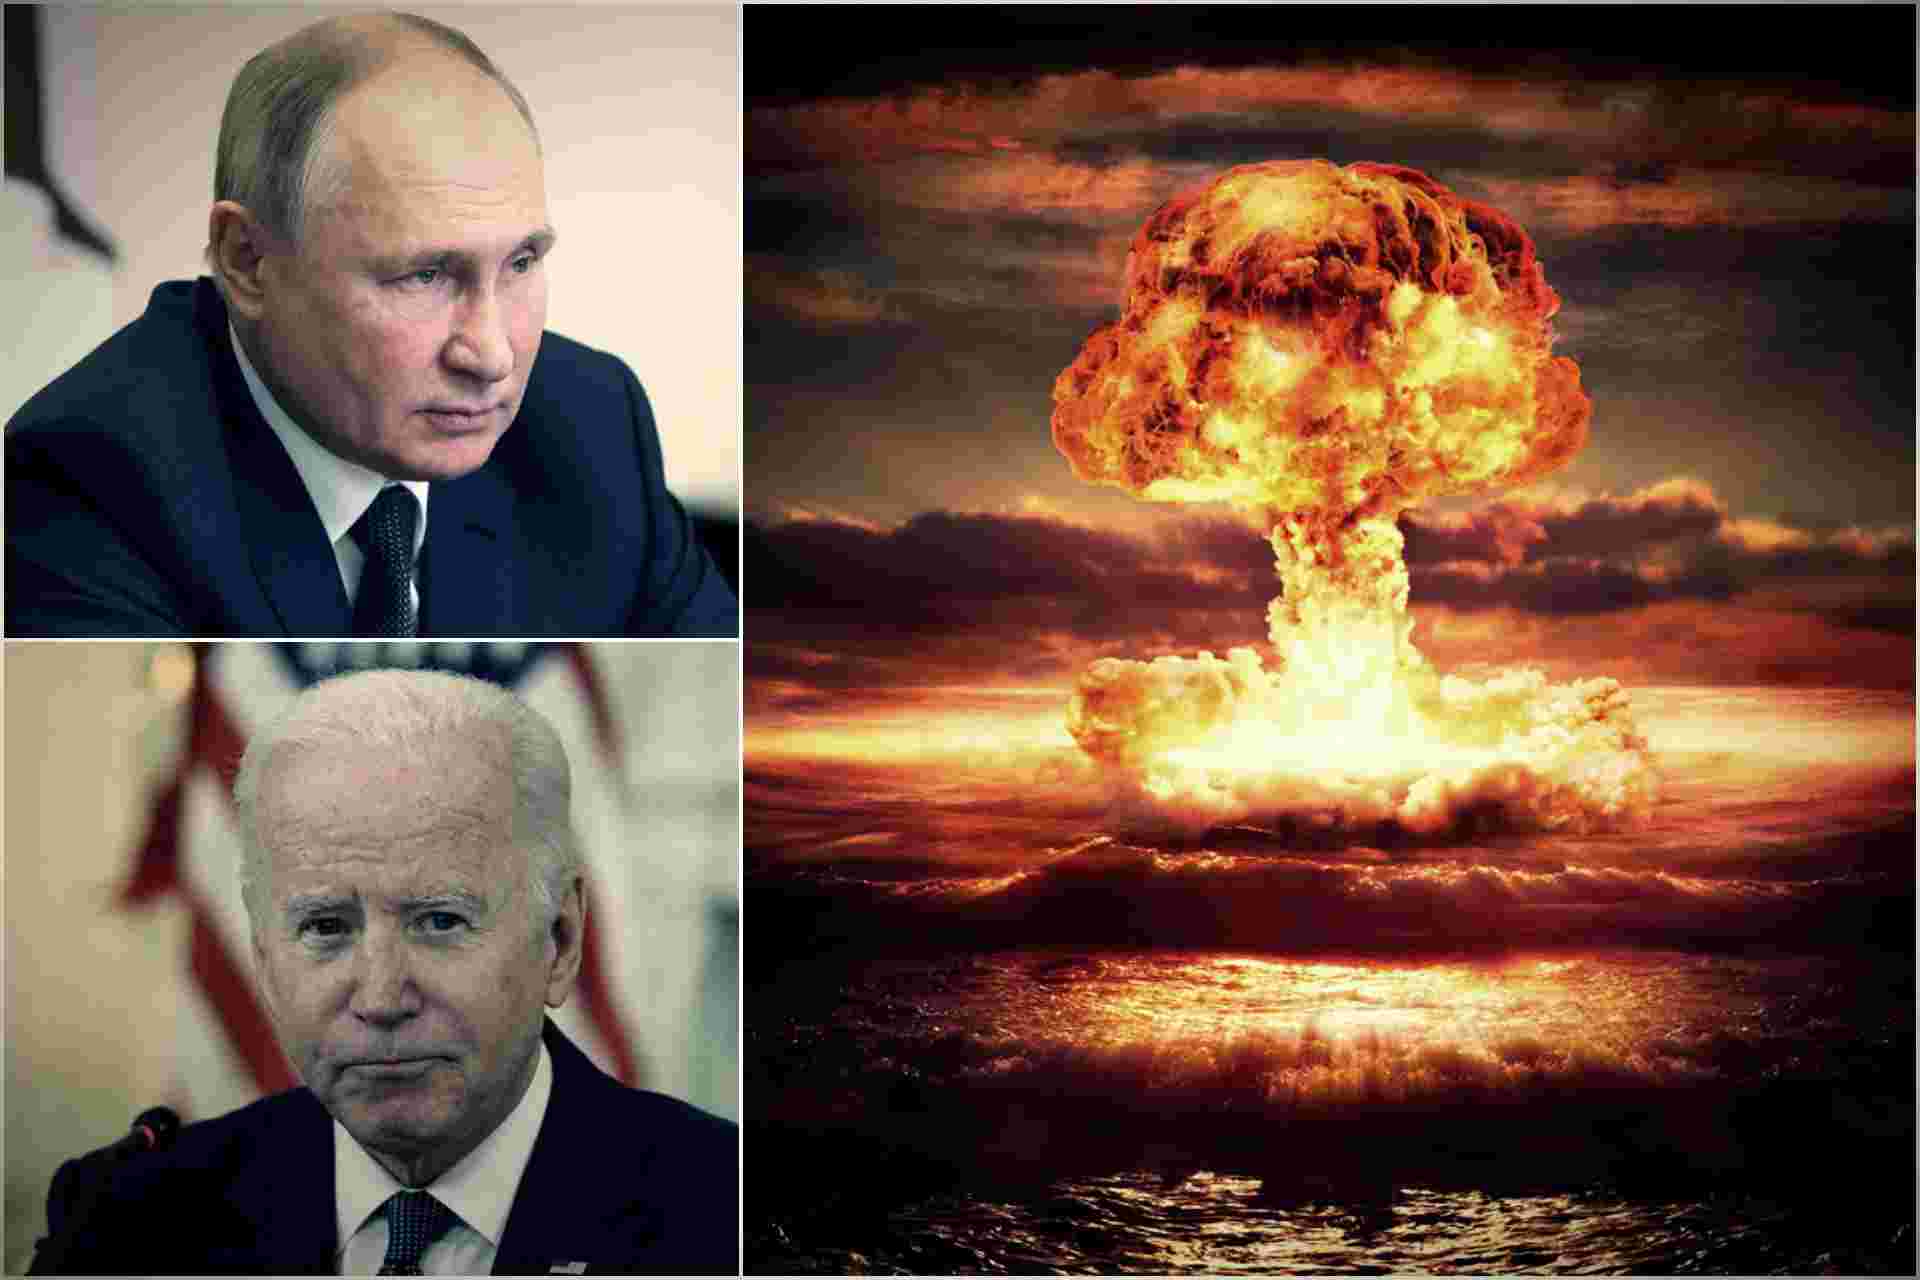 Može li upotrijebiti nuklearno oružje? ‘Nakon referenduma slijedi aneksija i tada će, za Rusiju, Ukrajina biti okupator…’